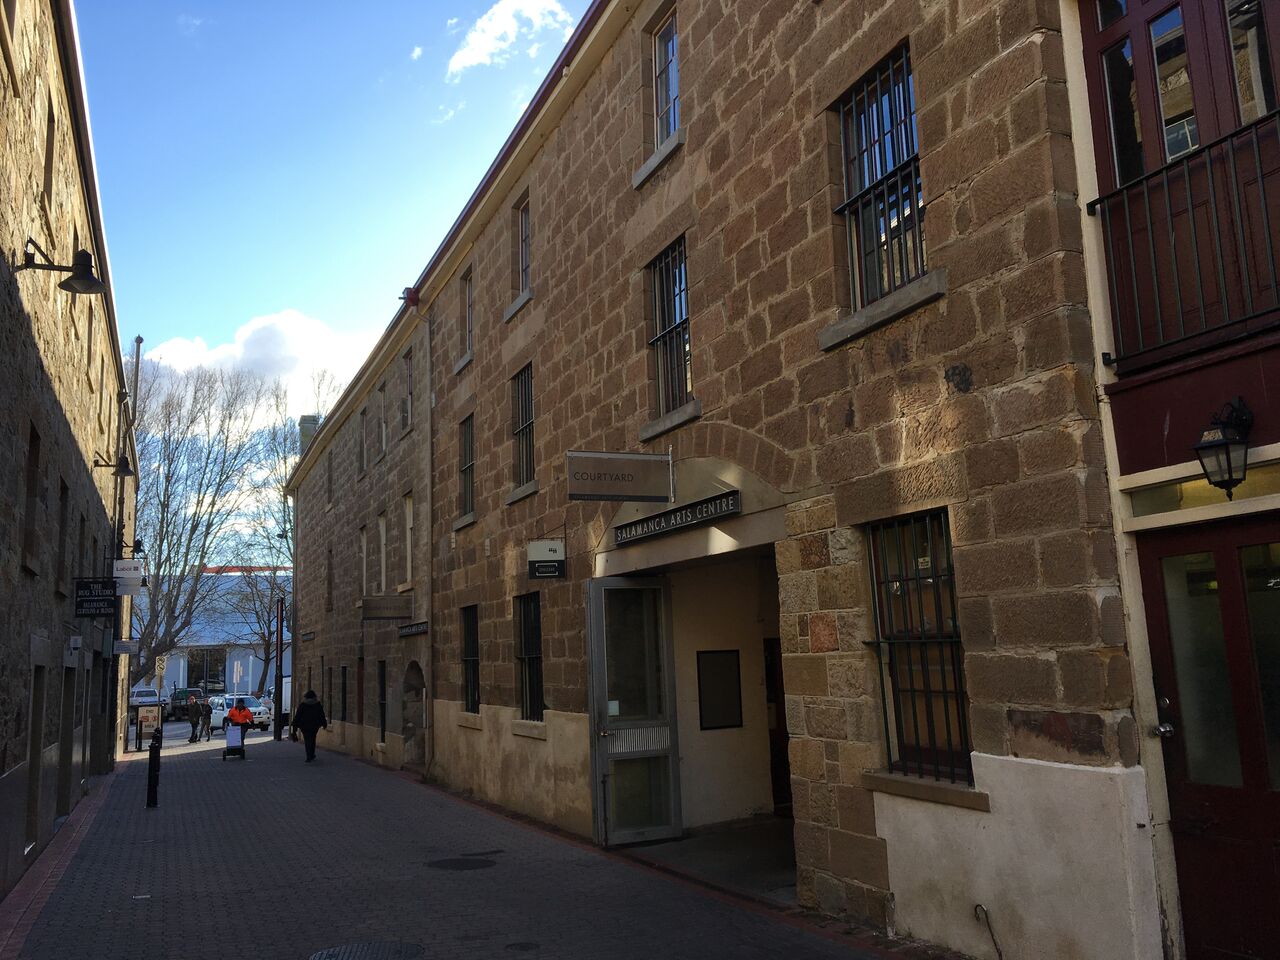 Salamanca Arts Centre, Hobart. 